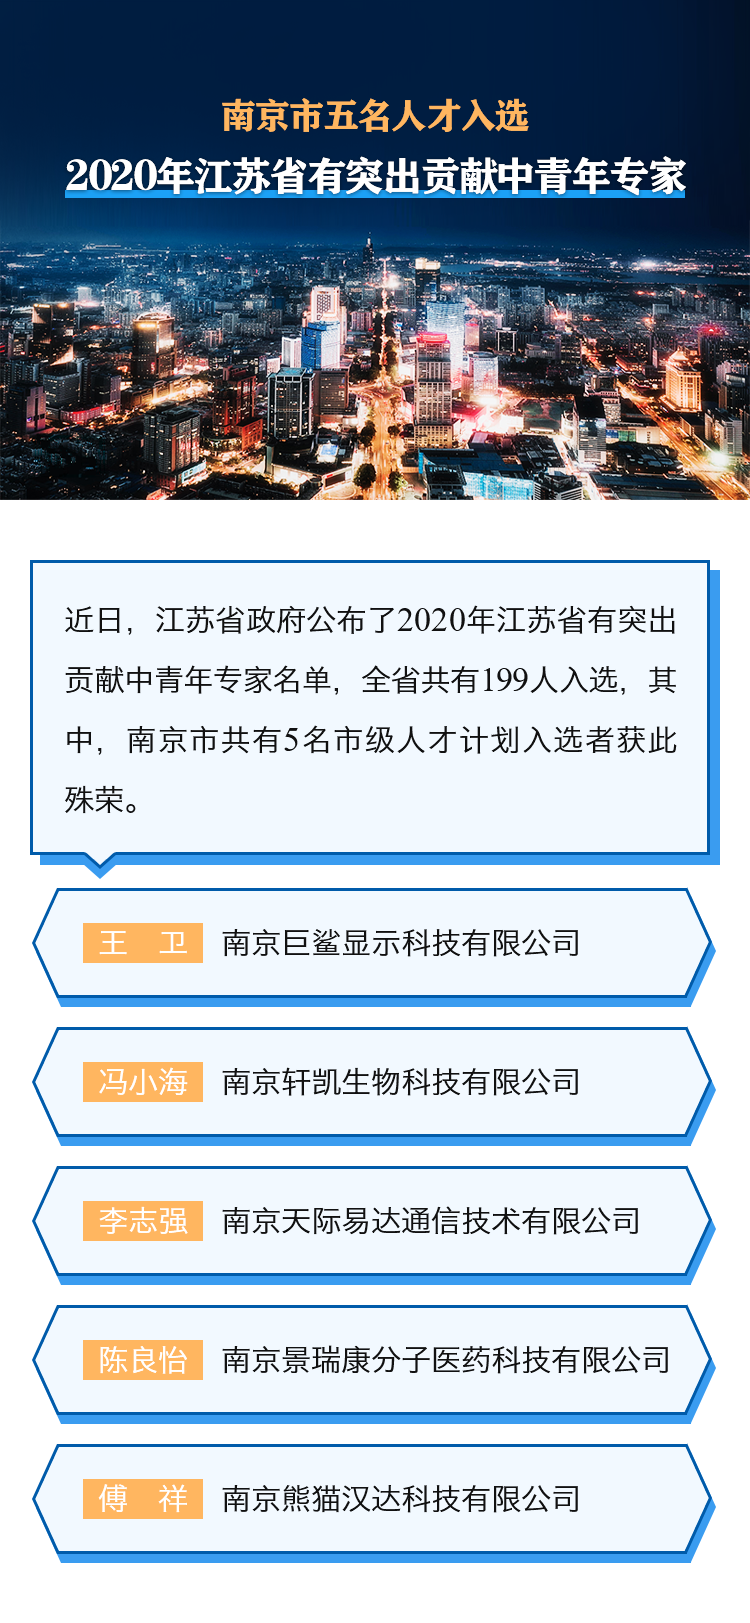 南京市五名人才入选2020年江苏省有突出贡献中青年专家